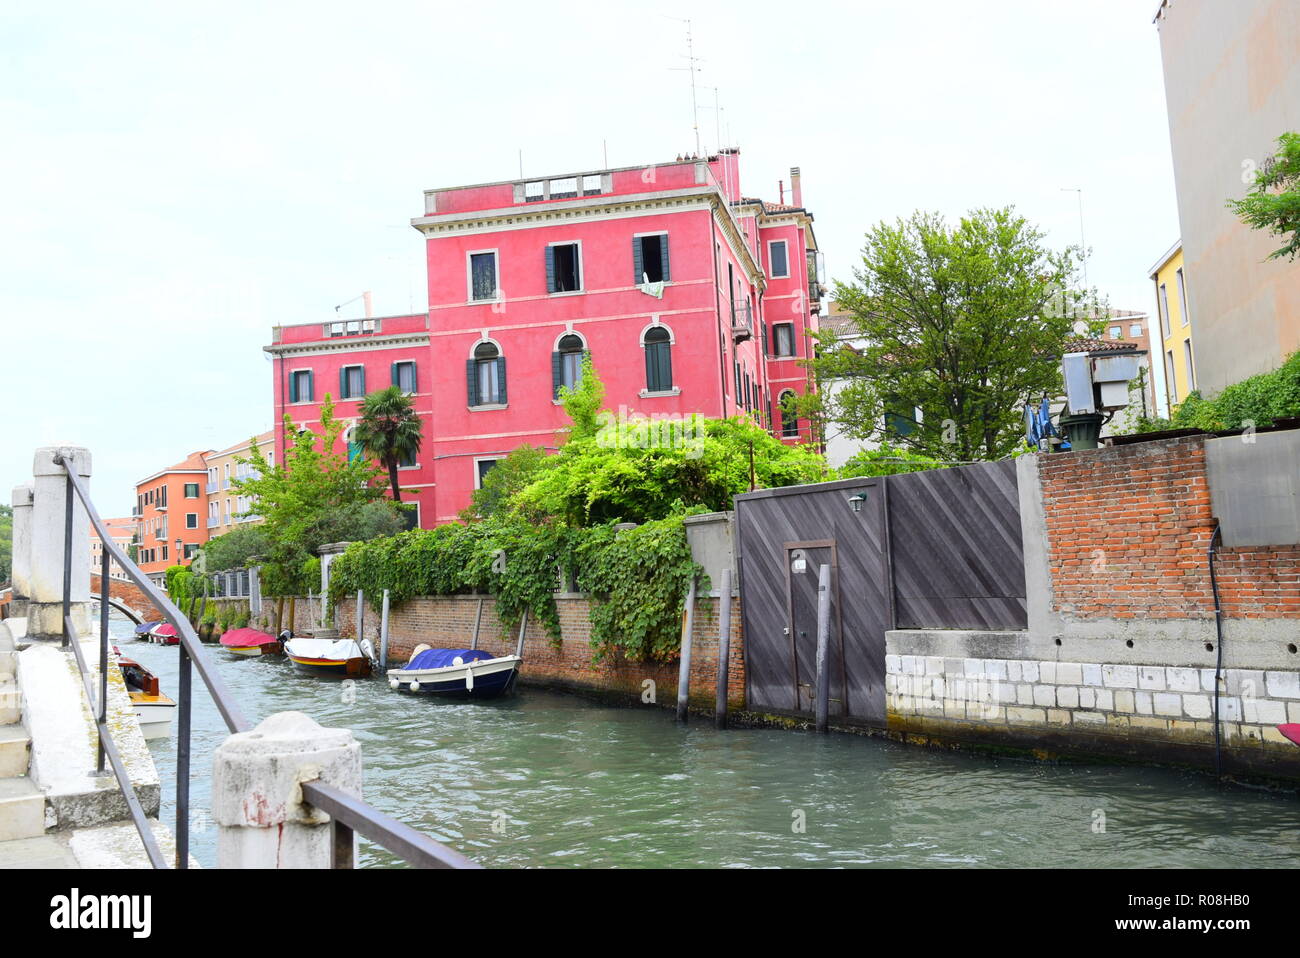 Fotografía DSLR HD de Venecia, Italia. Todas las fotos son tomadas en la auténtica Venecia, Italia. Usted puede ver el Gran Canal, barcos, lugares, edificios. A debe ver Foto de stock